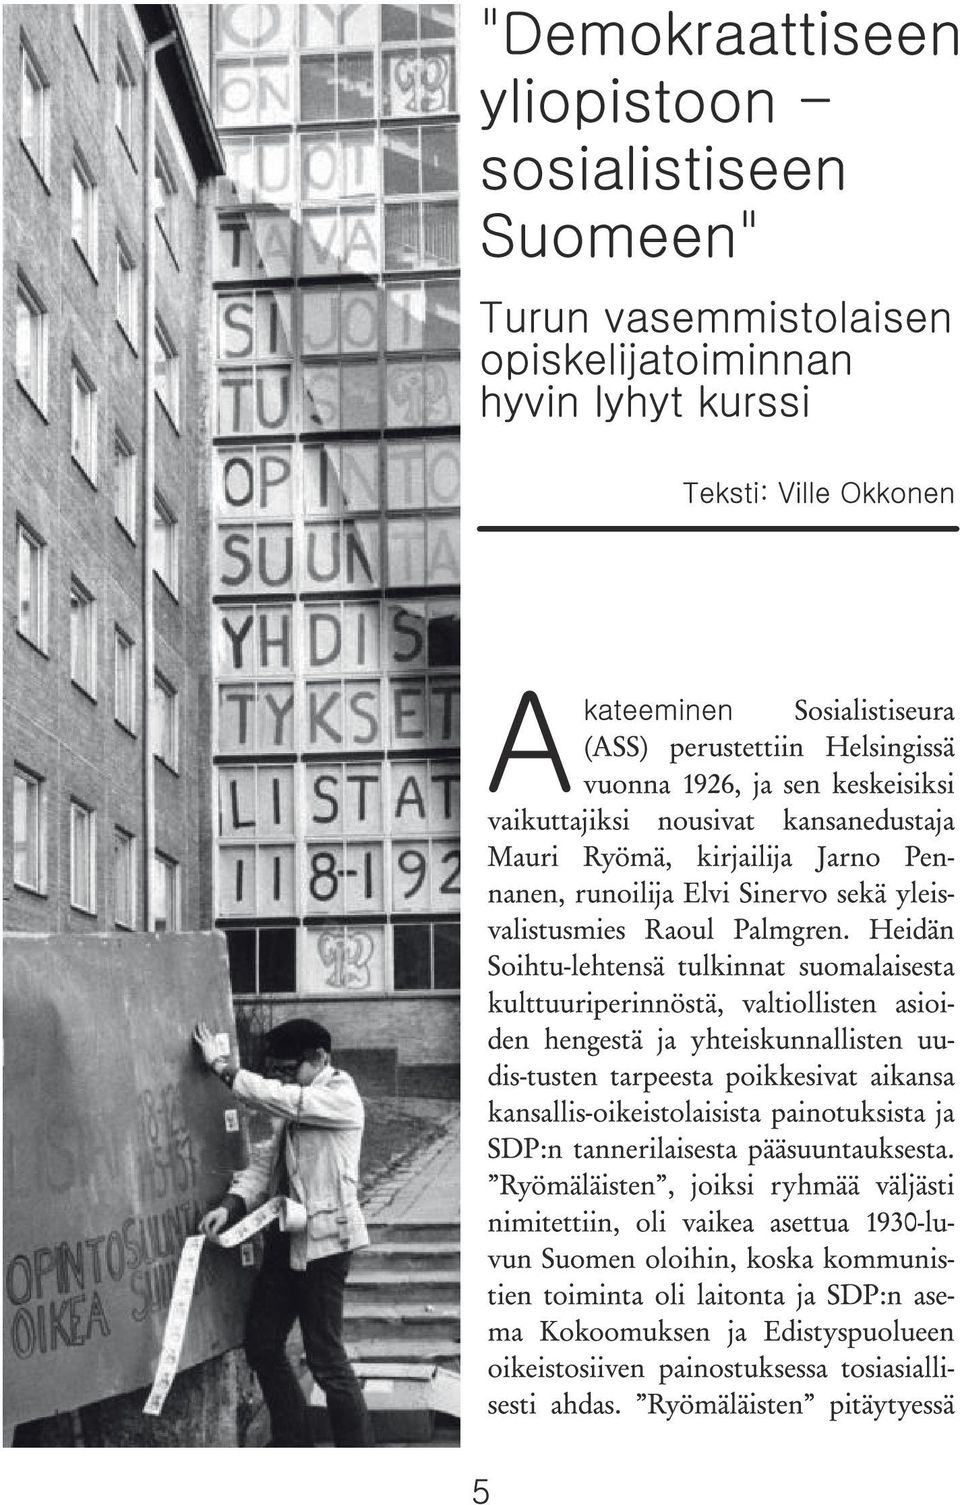 Heidän Soihtu-lehtensä tulkinnat suomalaisesta kulttuuriperinnöstä, valtiollisten asioiden hengestä ja yhteiskunnallisten uudis-tusten tarpeesta poikkesivat aikansa